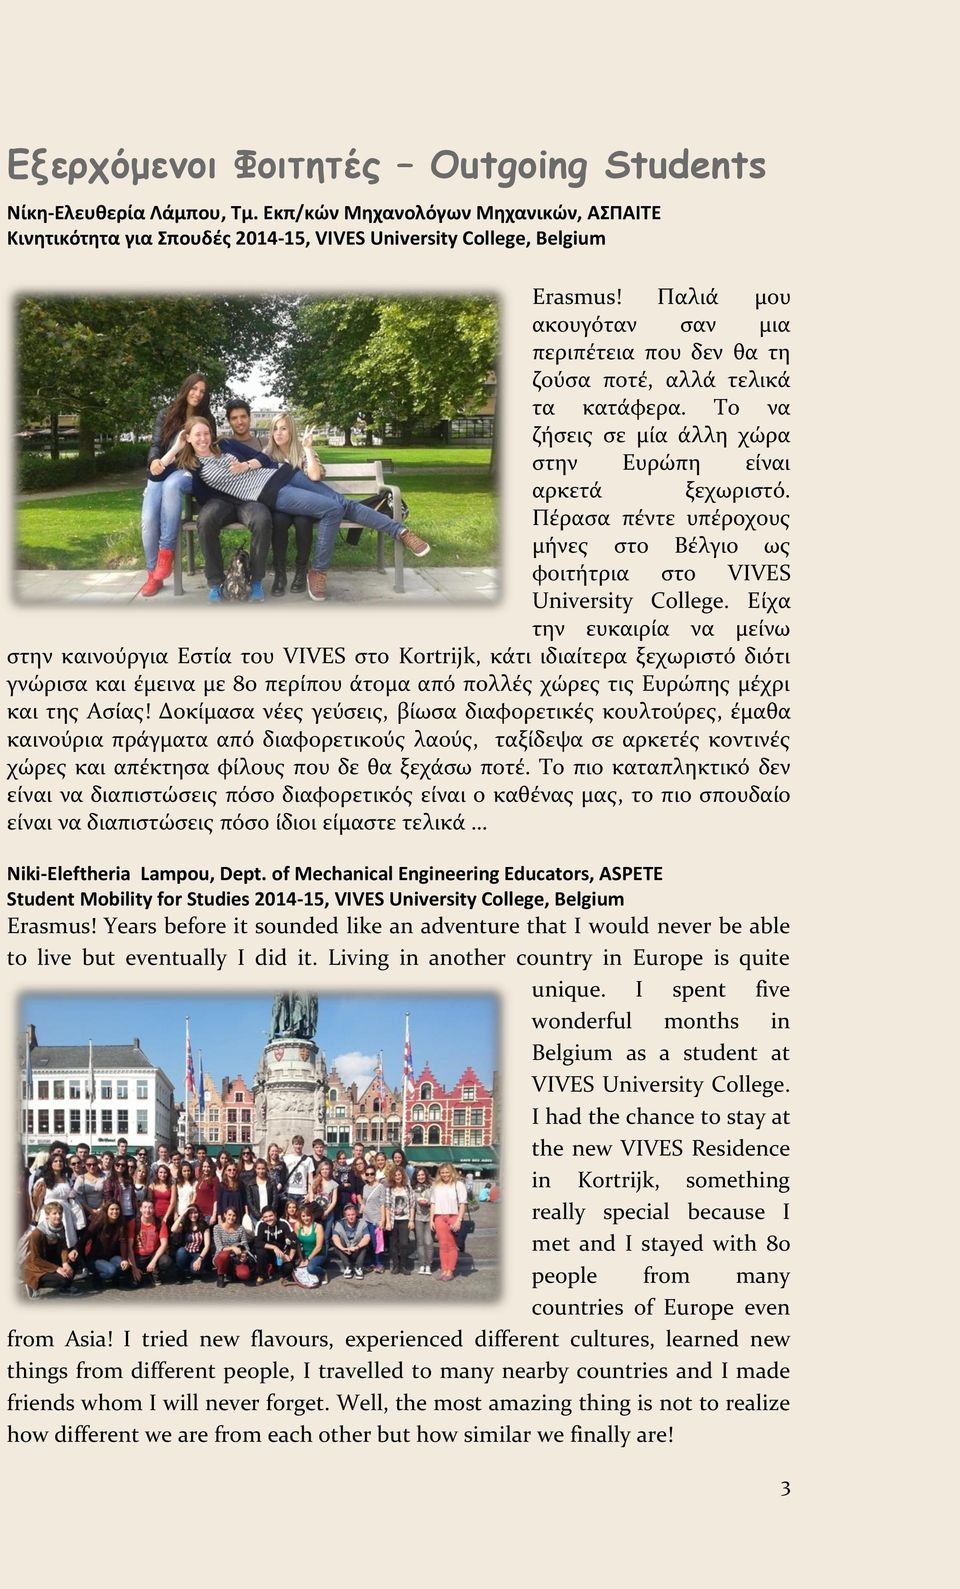 Πέρασα πέντε υπέροχους μήνες στο Βέλγιο ως φοιτήτρια στο VIVES University College.